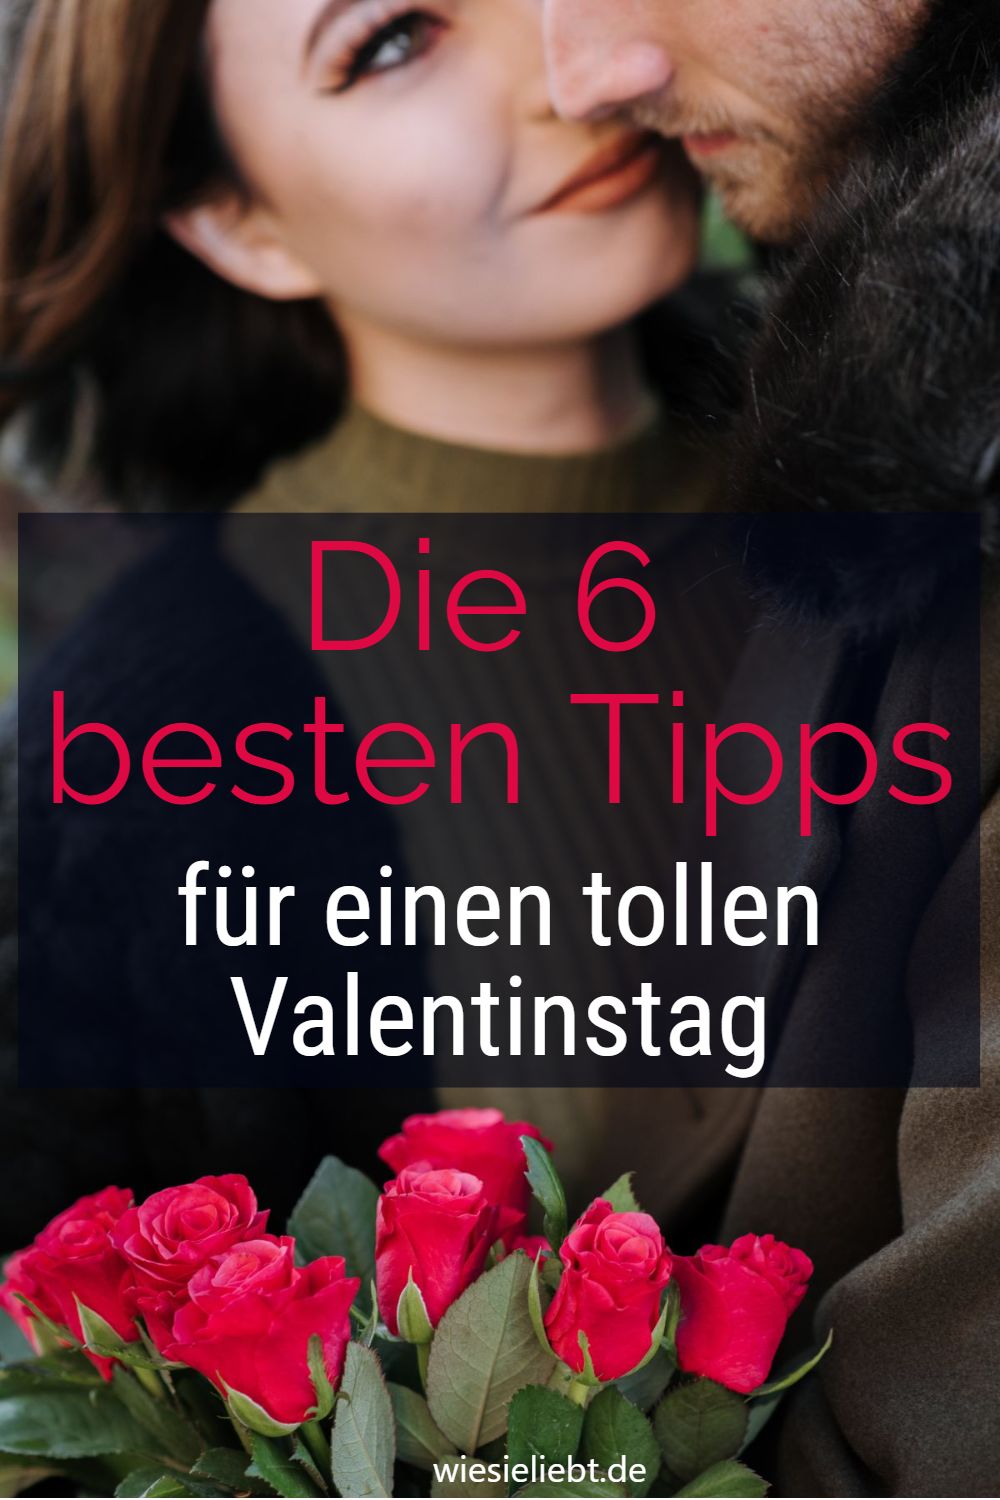 Die 6 besten Tipps für einen tollen Valentinstag